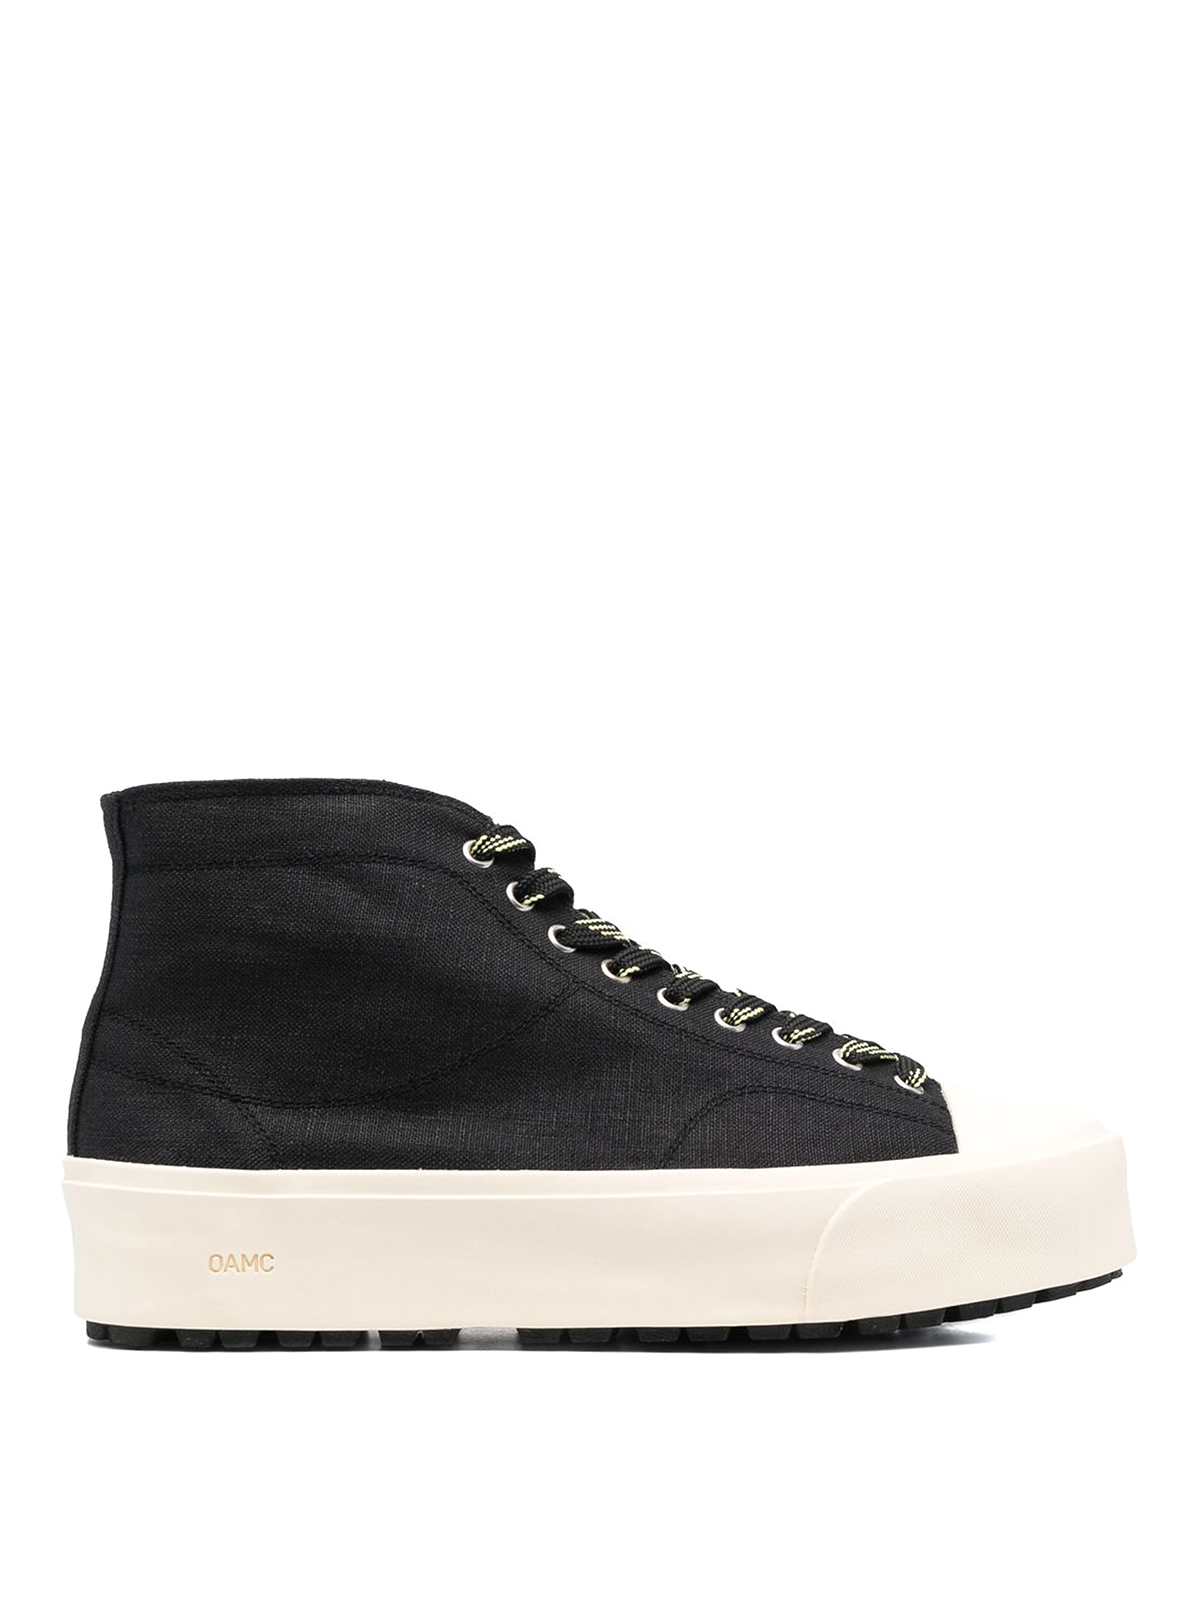 Shop Oamc Sneakers Black